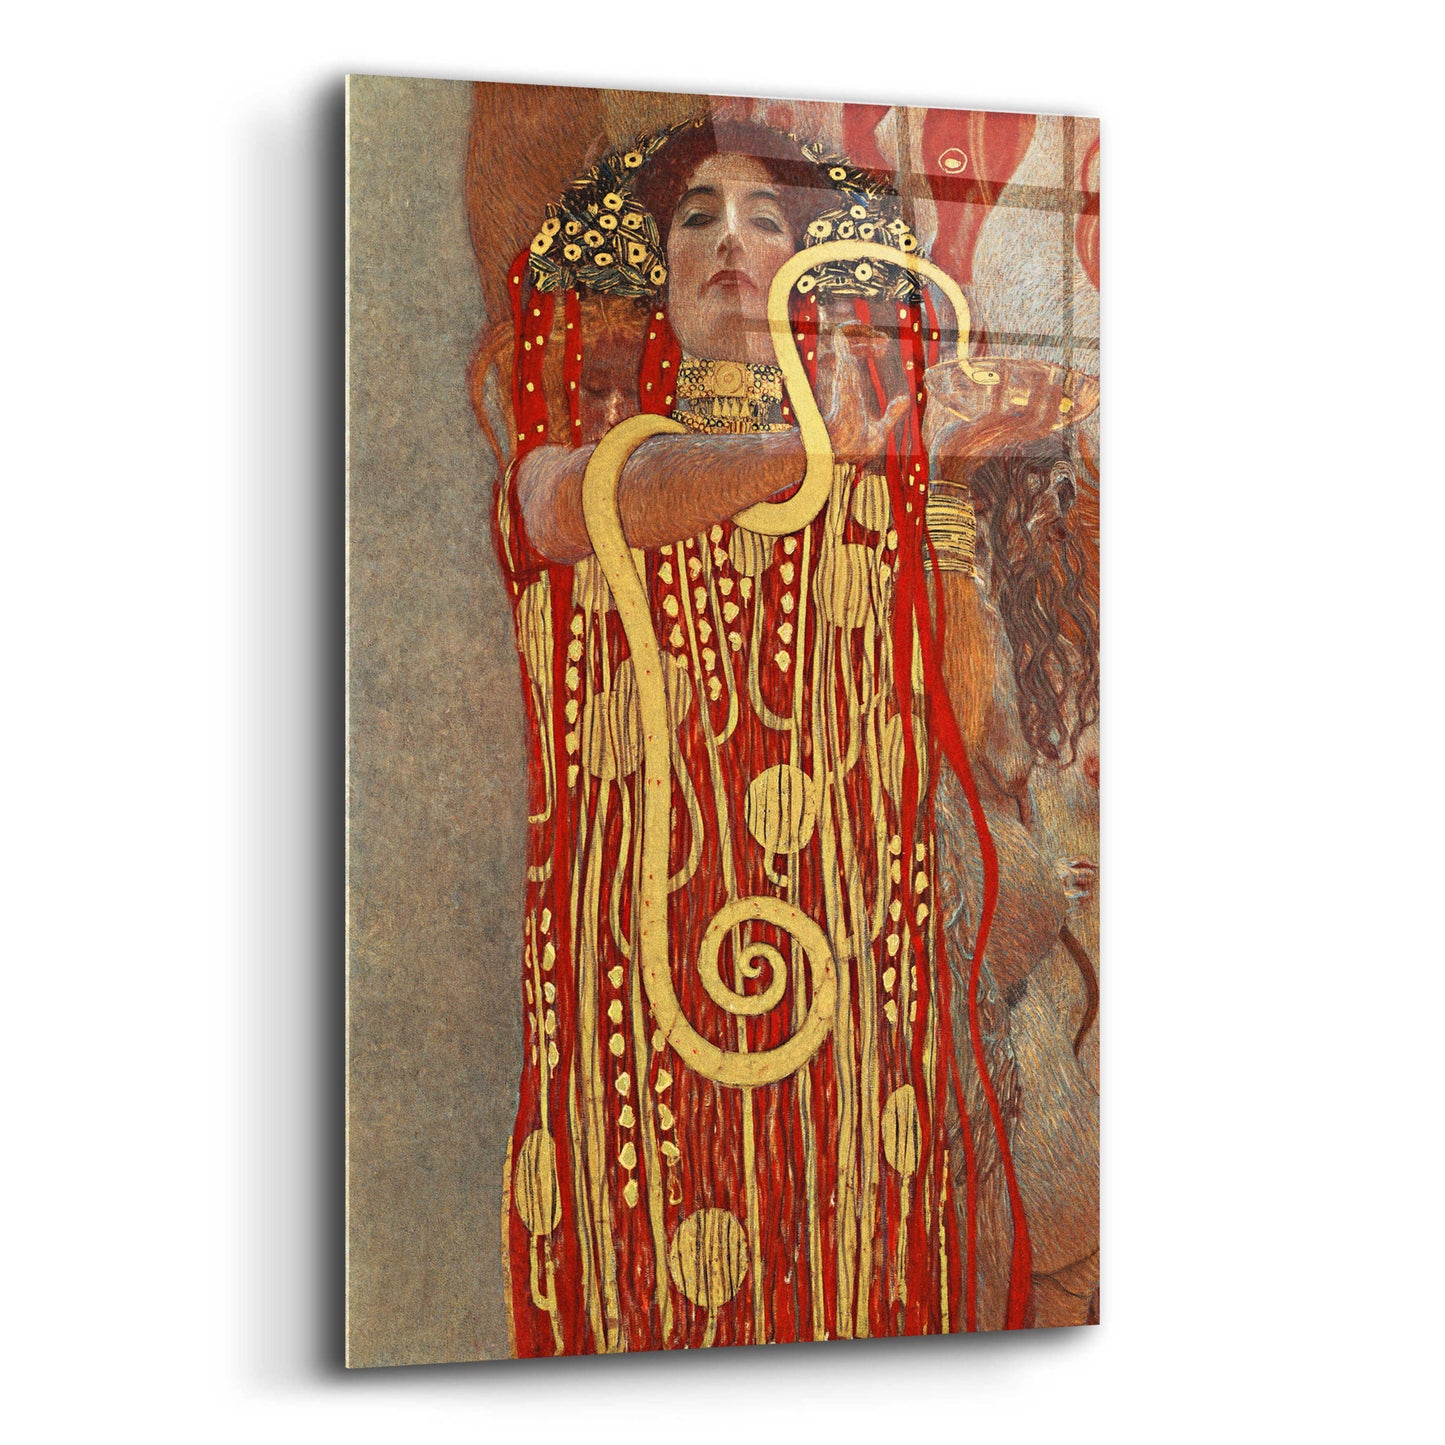 Epic Art 'Hygieia' by Gustav Klimt, Acrylic Glass Wall Art,12x16